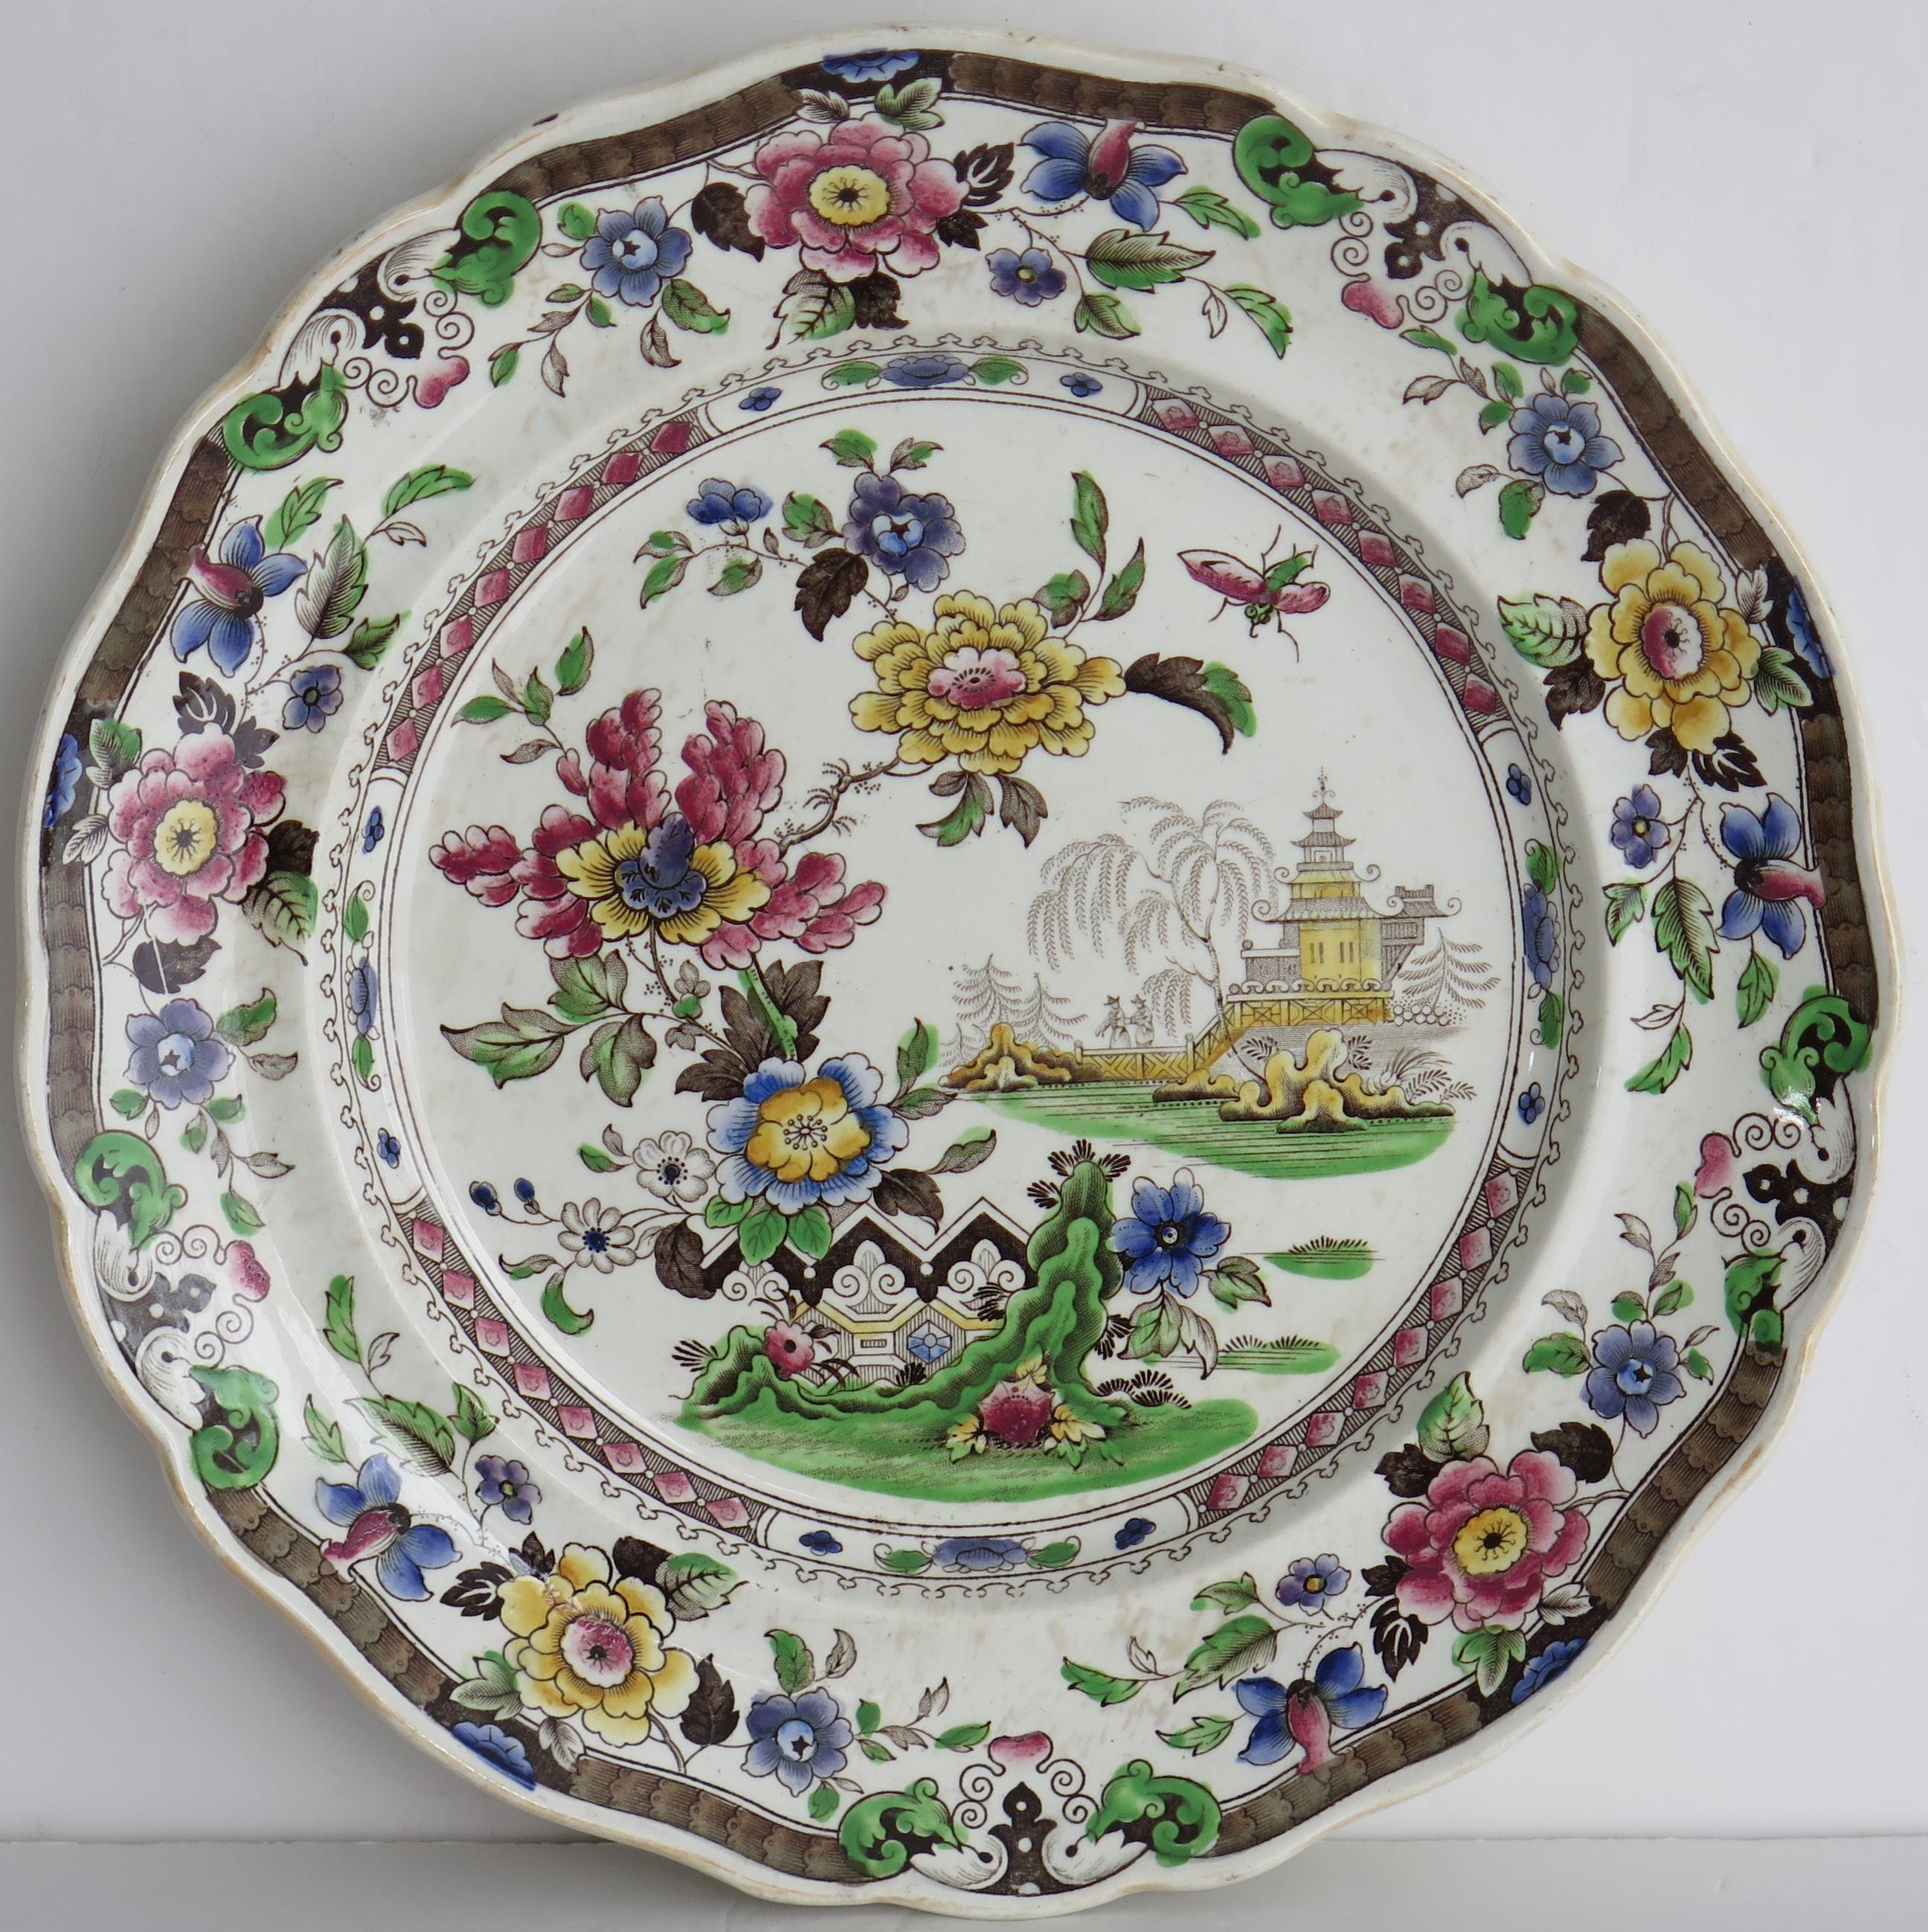 Il s'agit d'une bonne assiette à dîner décorative en faïence fabriquée par Zachariah Boyle de Hanley et Stoke, en Angleterre, vers 1825.

L'assiette est bien empotée et son bord est incurvé et dentelé.

Il présente un motif Chinoiserie détaillé